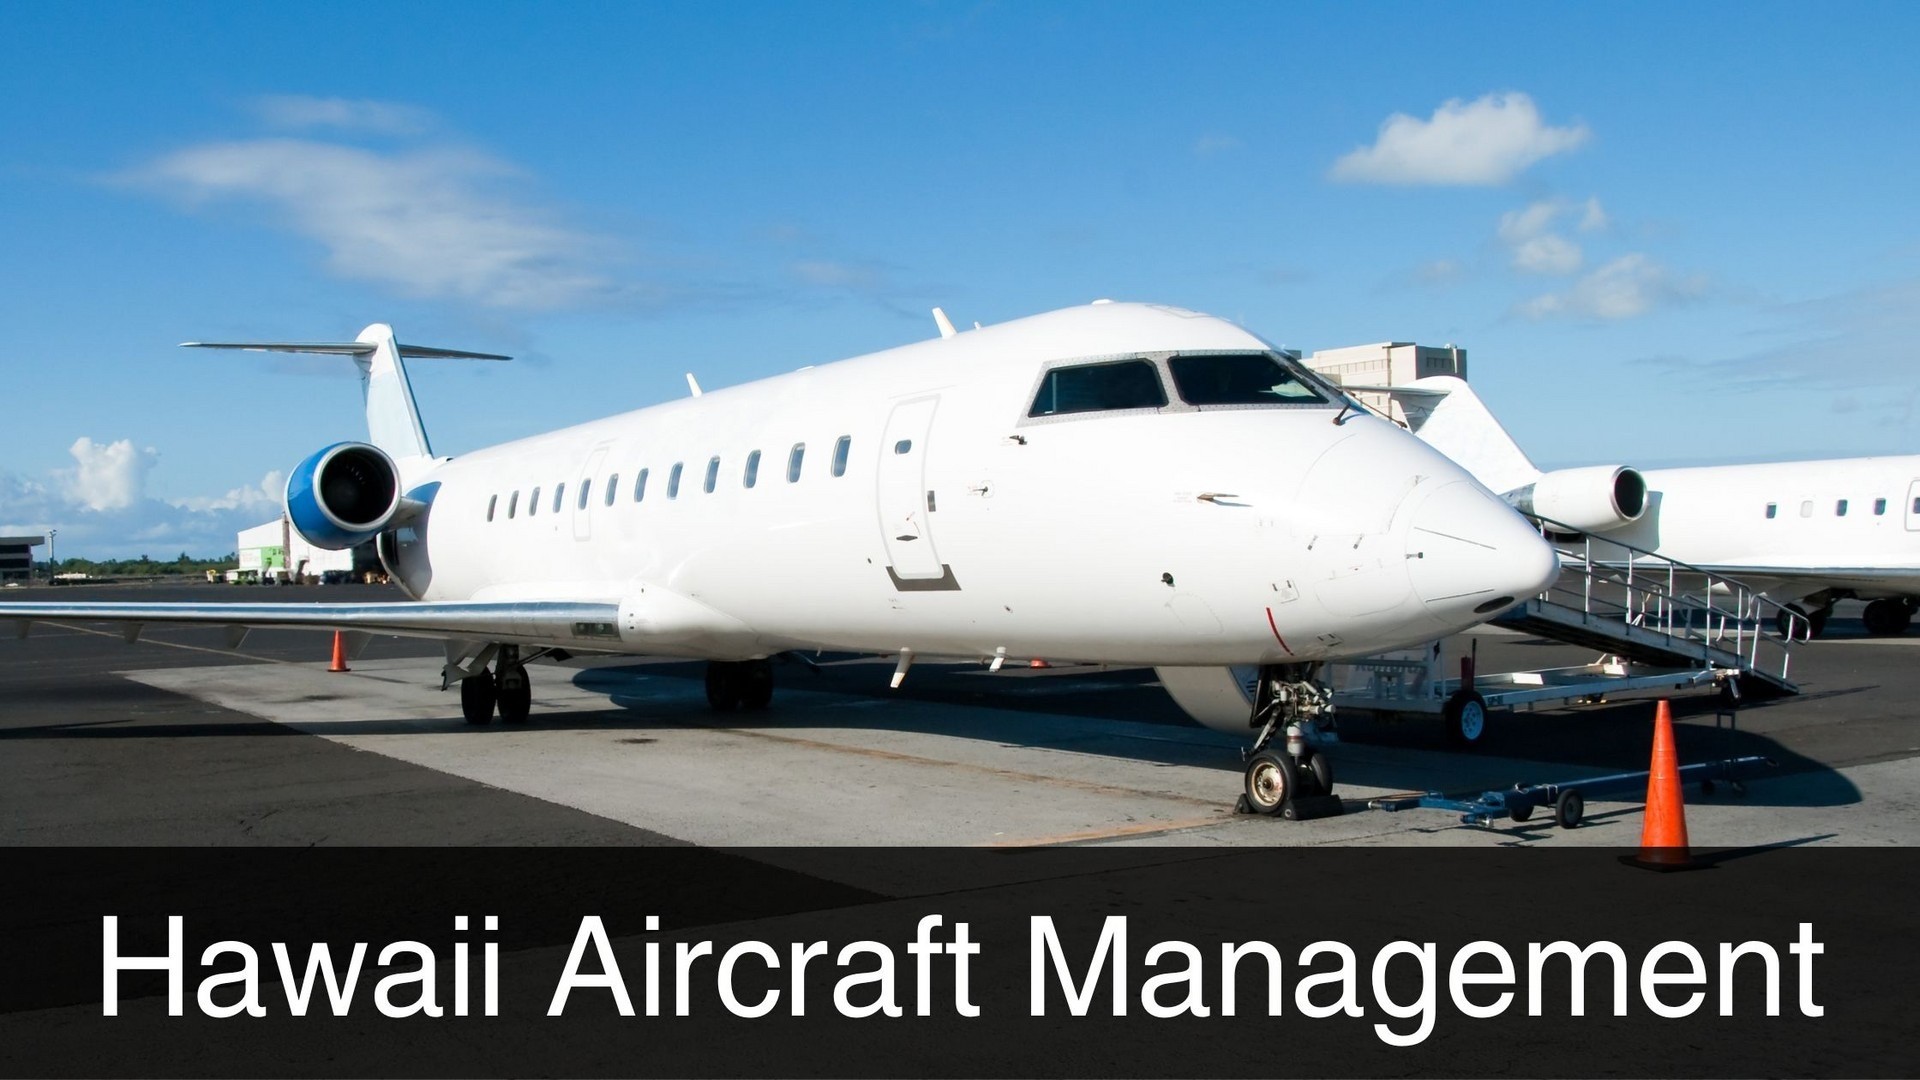 Hawaii Aircraft Management Services